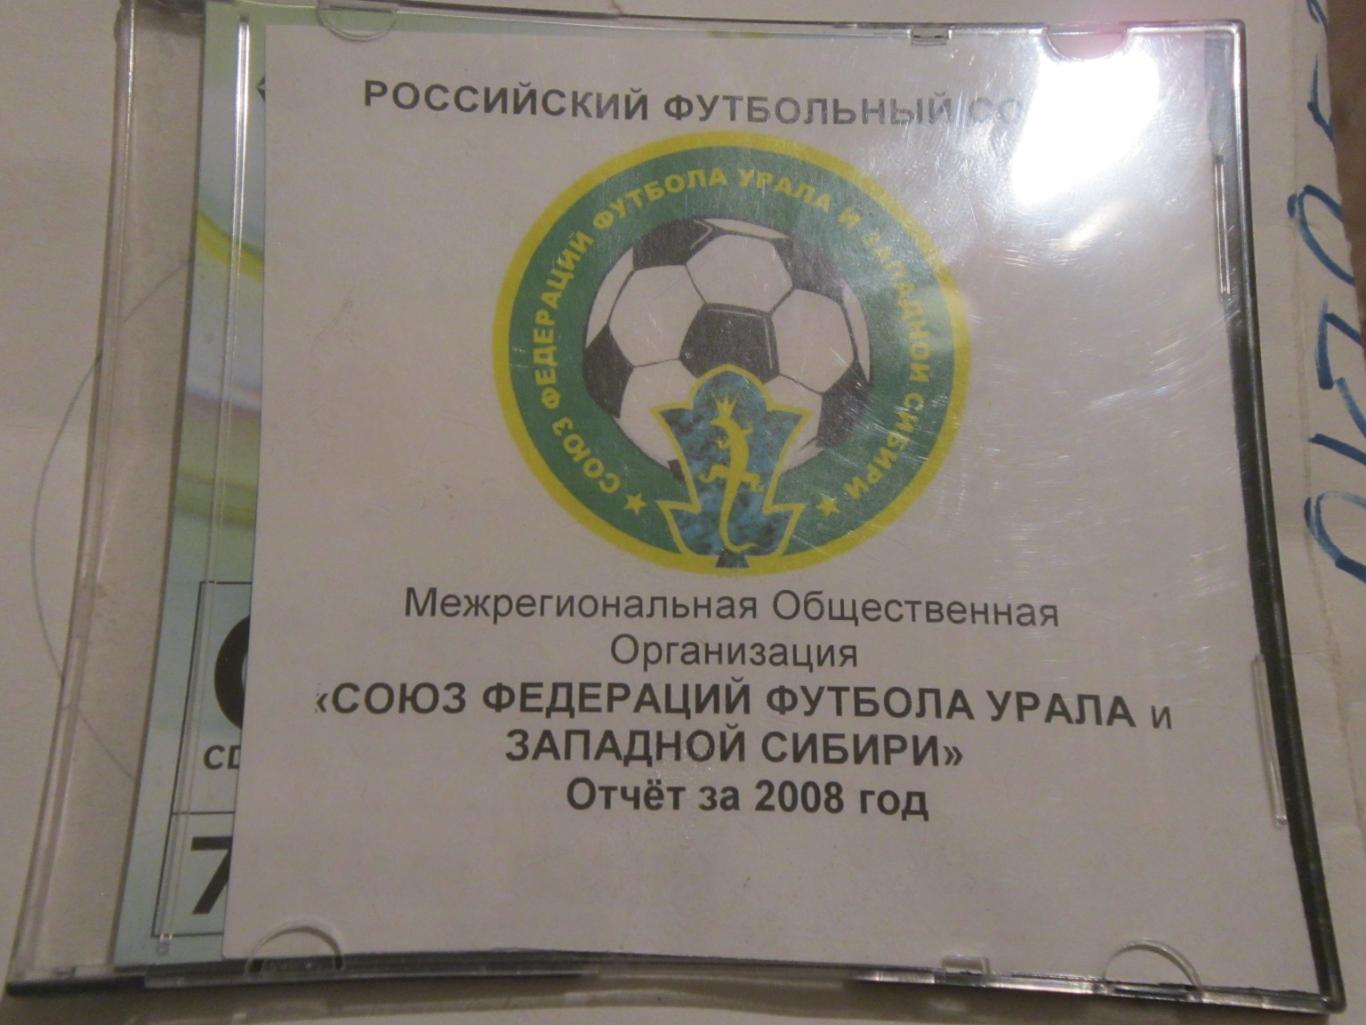 Годовой отчёт СФФУ и ЗС за 2008 год на СД-диске